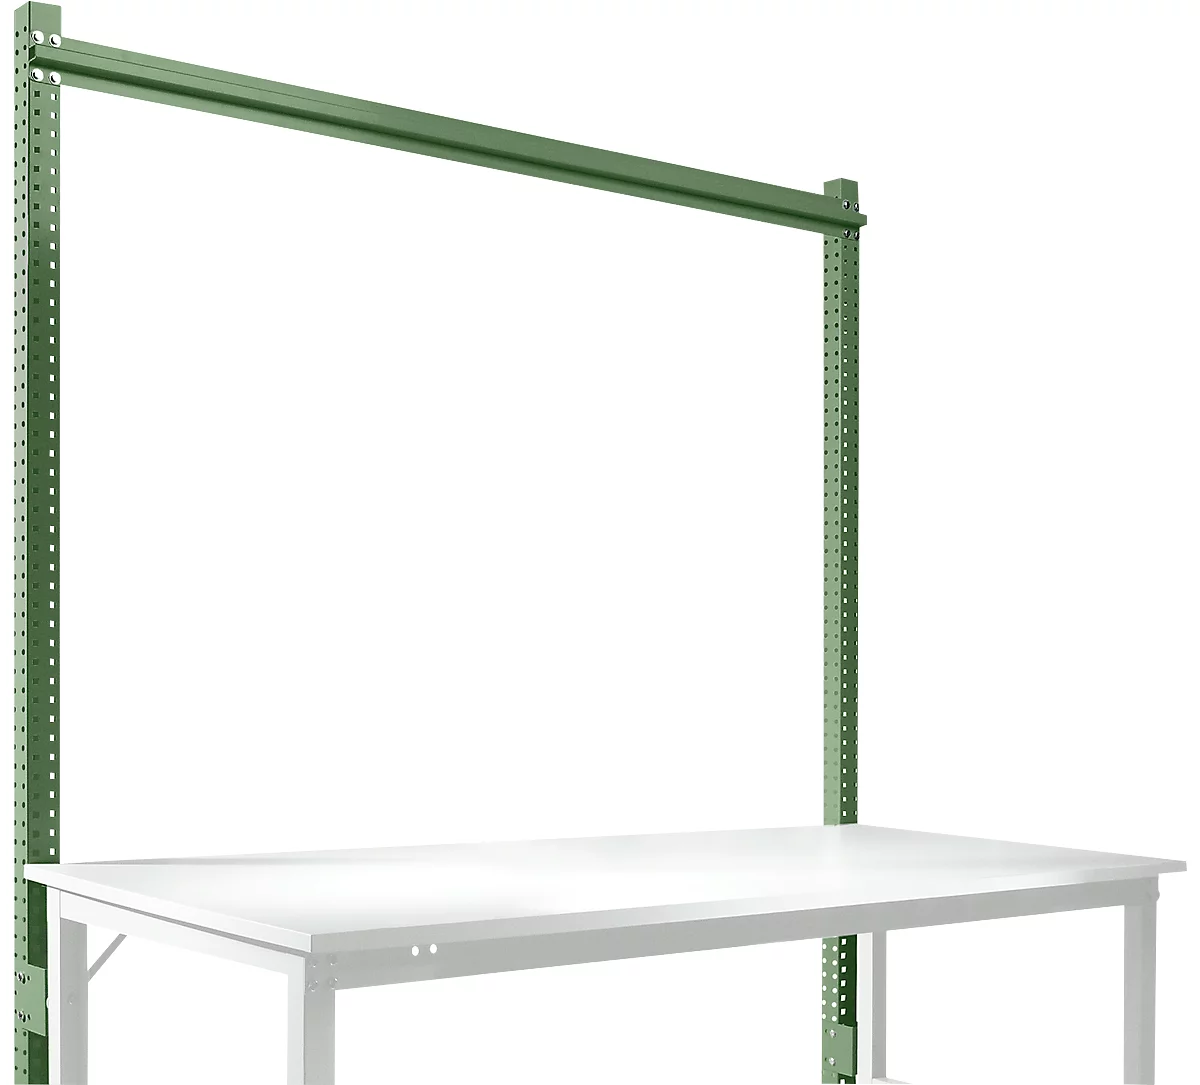 Estructura pórtica adicional, Mesa básica SPEZIAL sistema mesa de trabajo/banco de trabajo UNIVERSAL/PROFI, 1750 mm, verde reseda